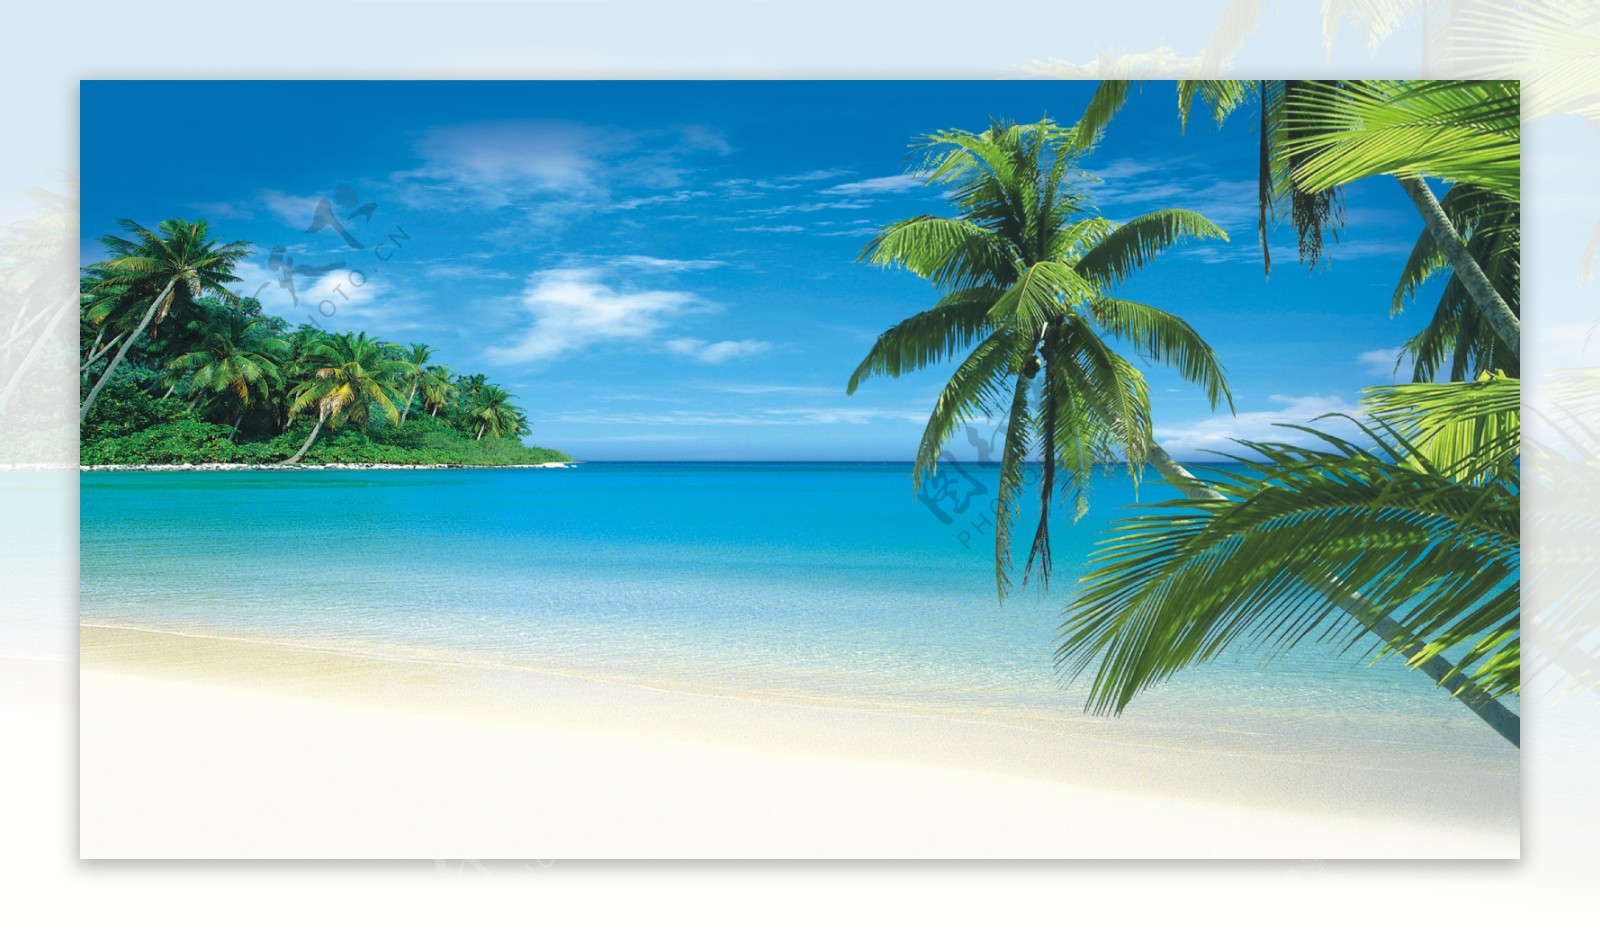 湛蓝海天椰树图片